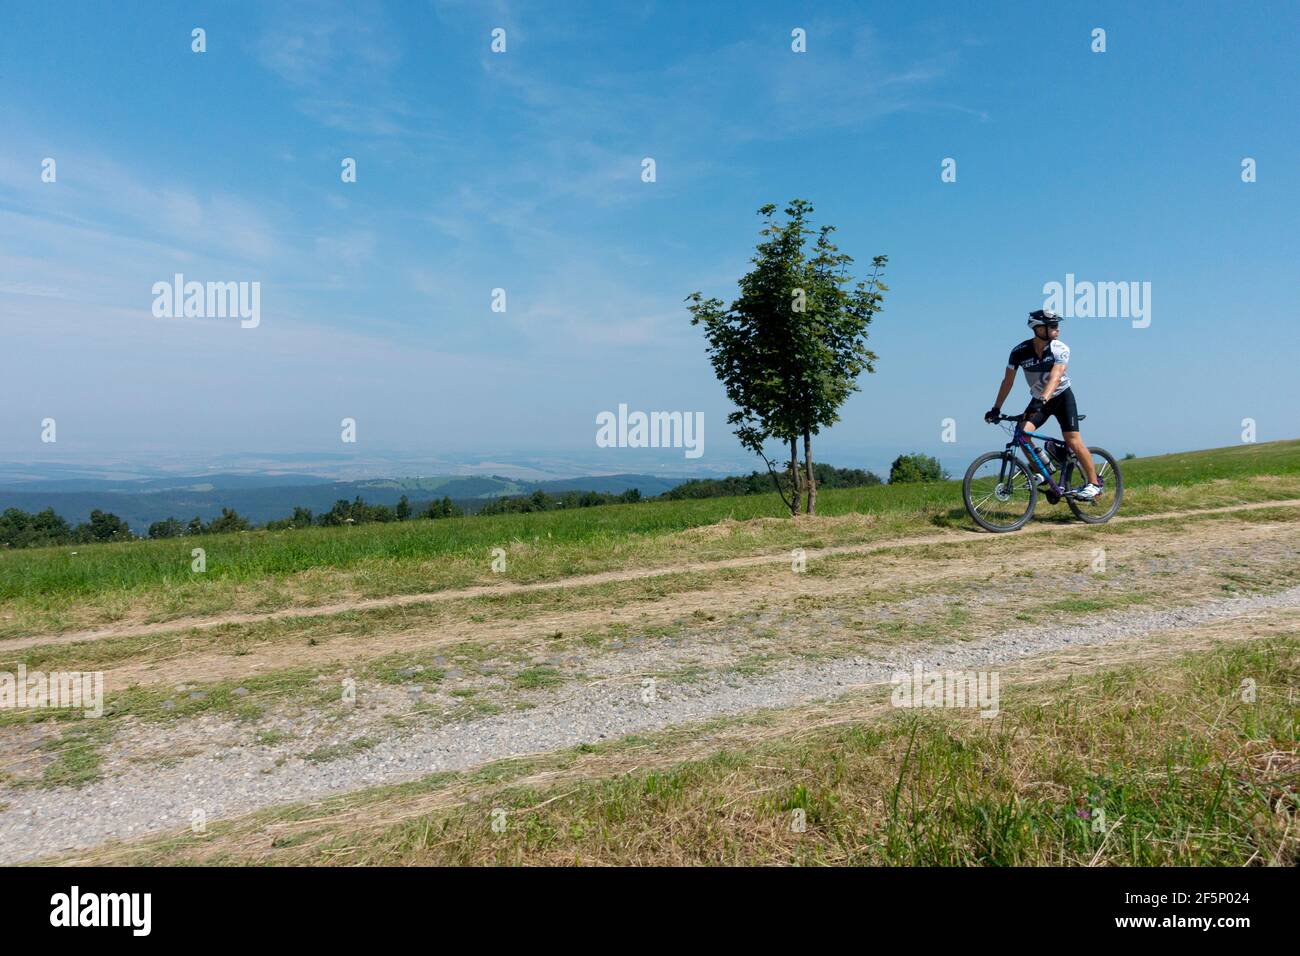 Un uomo in bicicletta da solo su una strada di campagna con un piccolo albero sulla strada, stile di vita in una bella giornata, in bicicletta Foto Stock